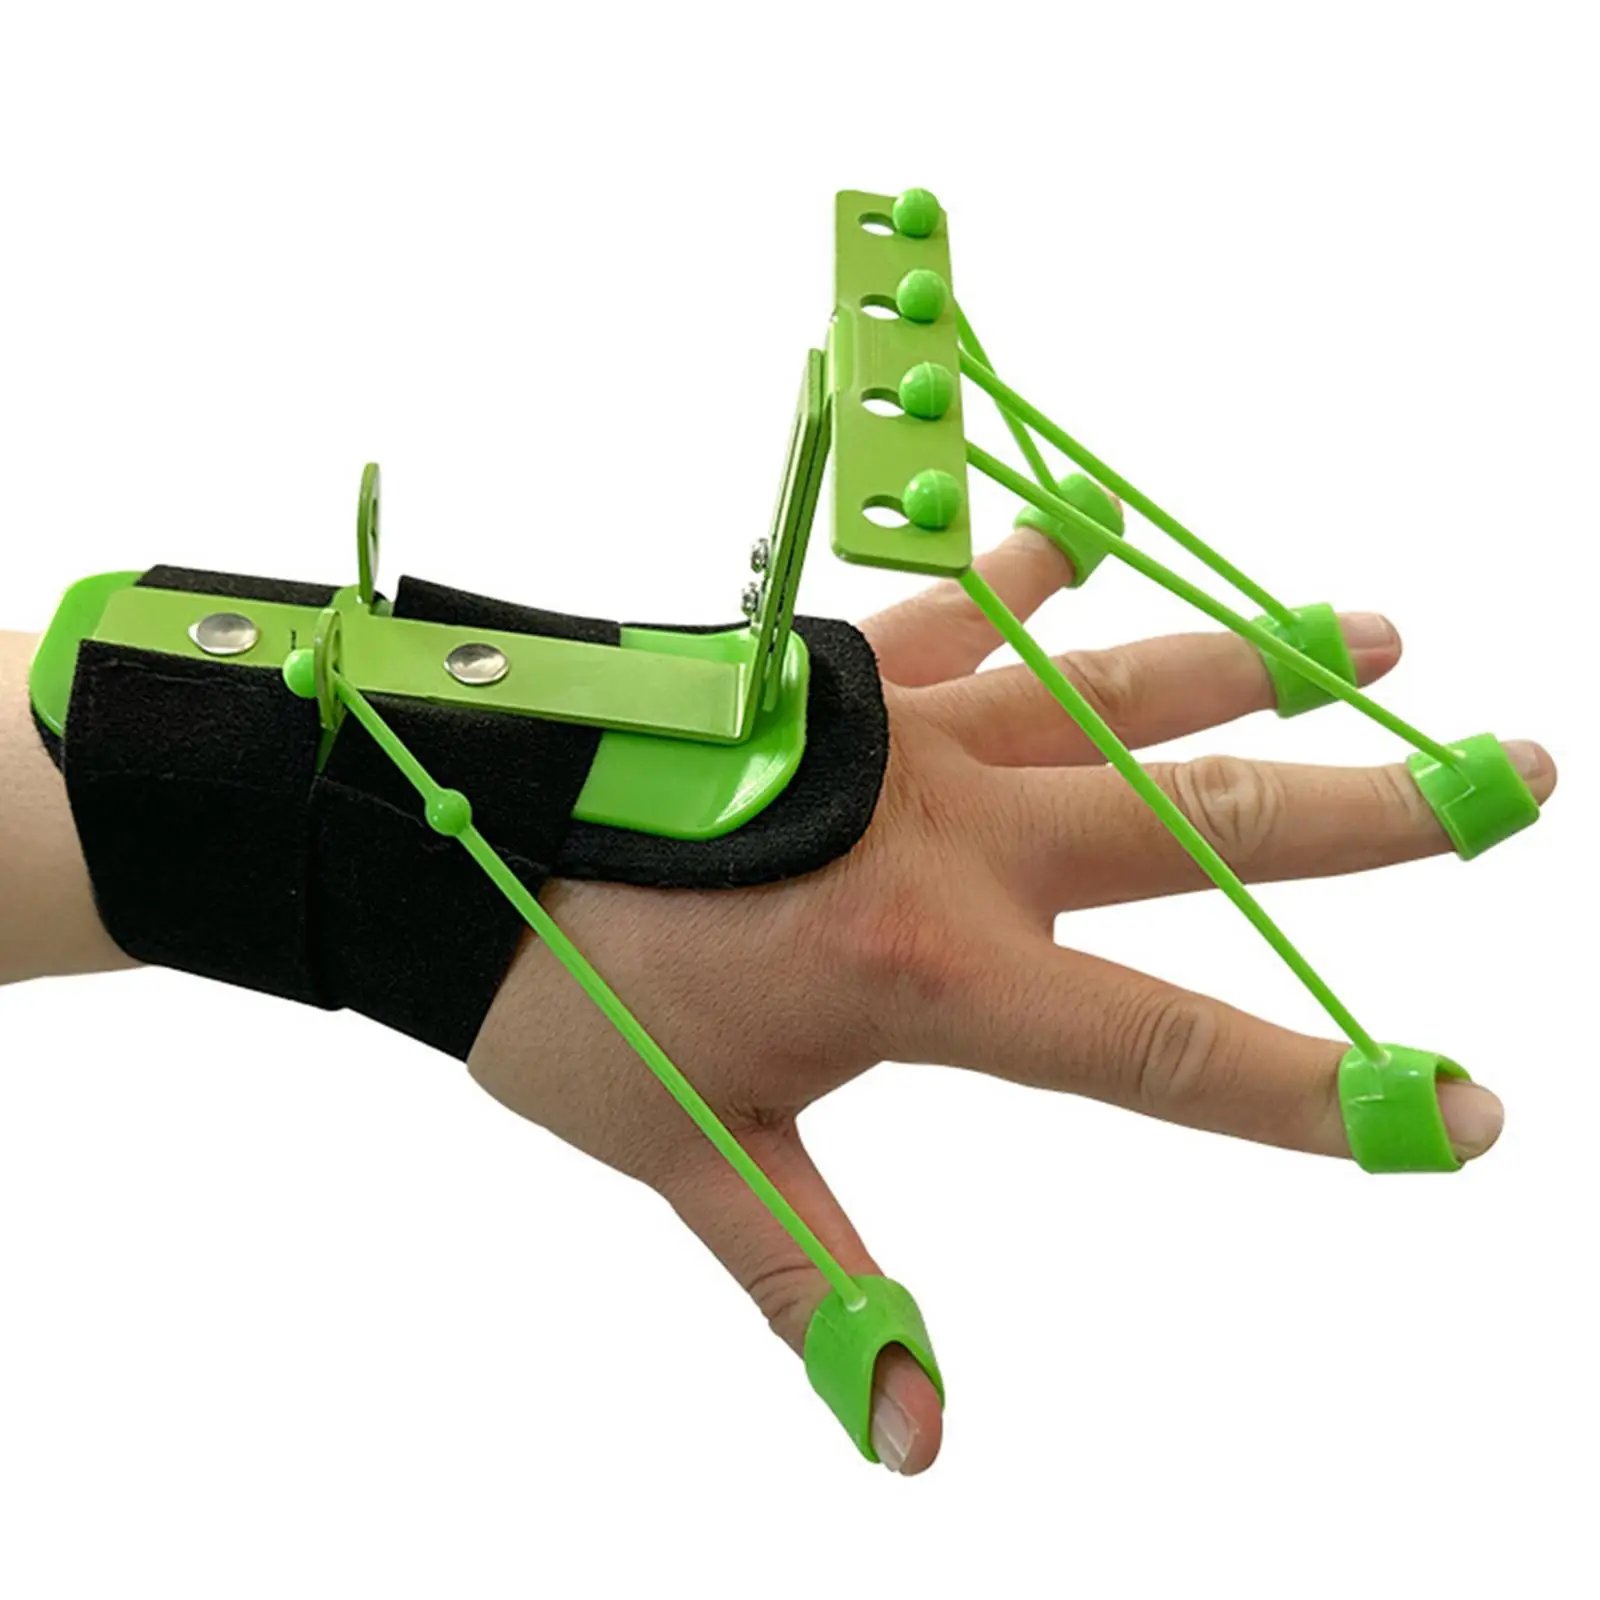 Finger Exerciser Universal Guitar Strength Trainer Wrist Hand Portable Durable